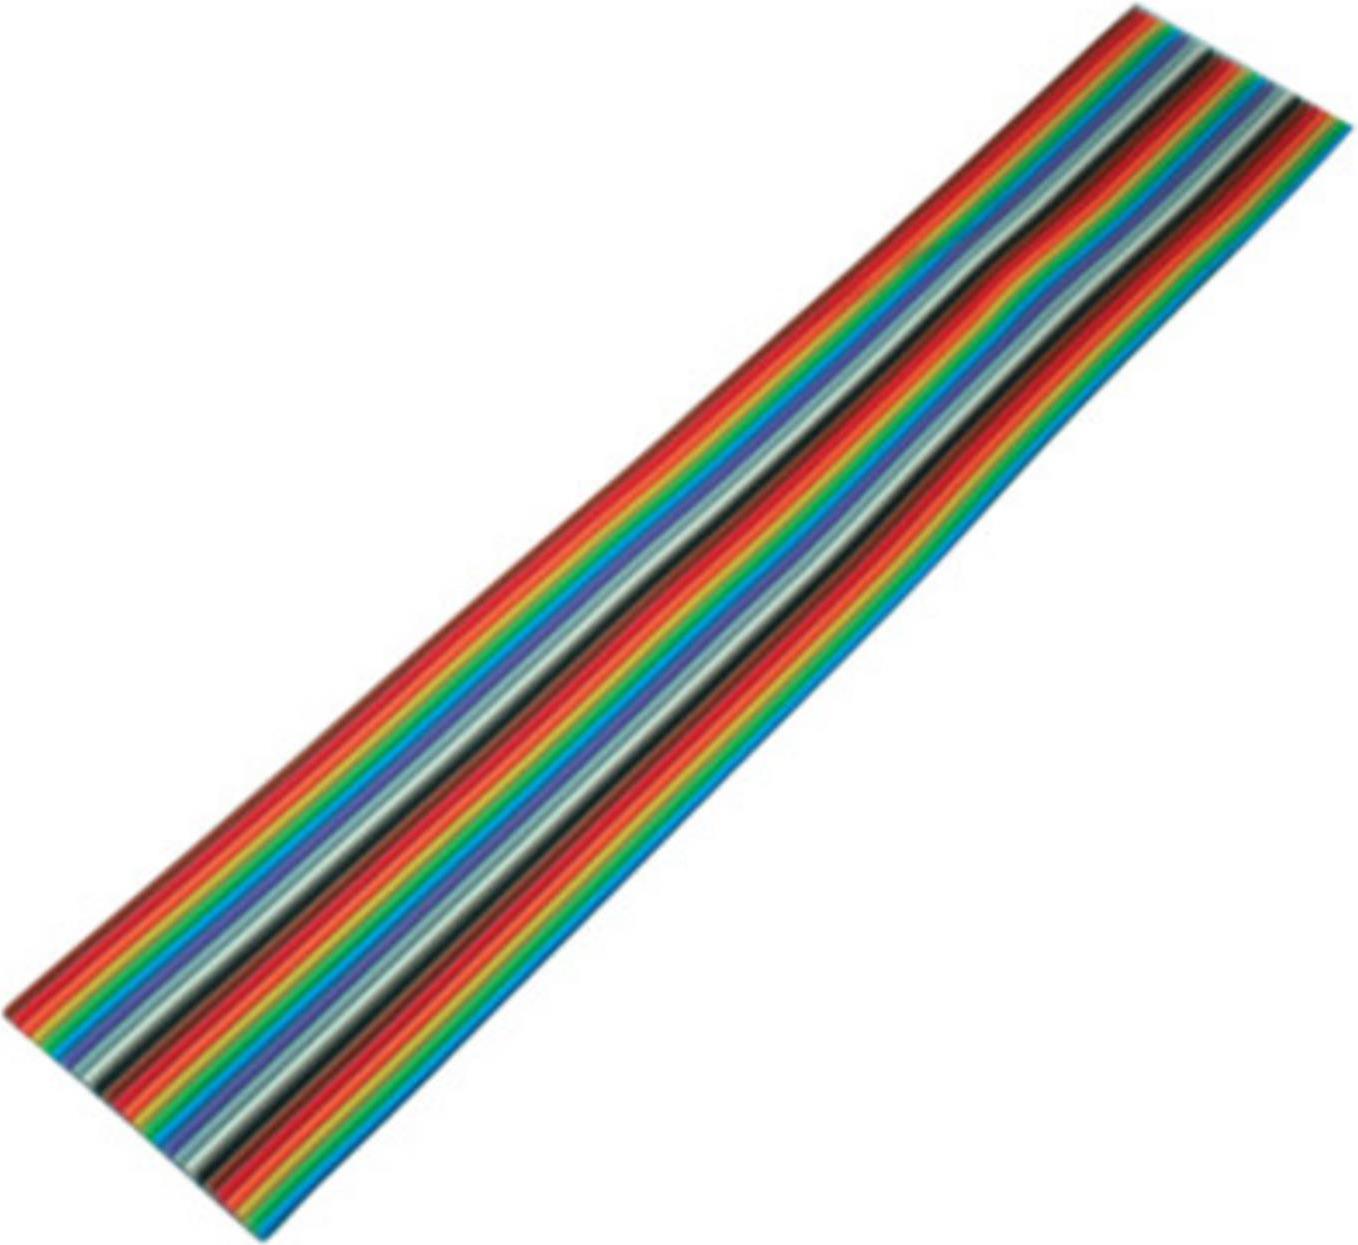 S-CONN S/CONN maximum connectivity Flachkabel, farbig Raster 1,27 mm, 26 pin, 10,0m (79069-10)